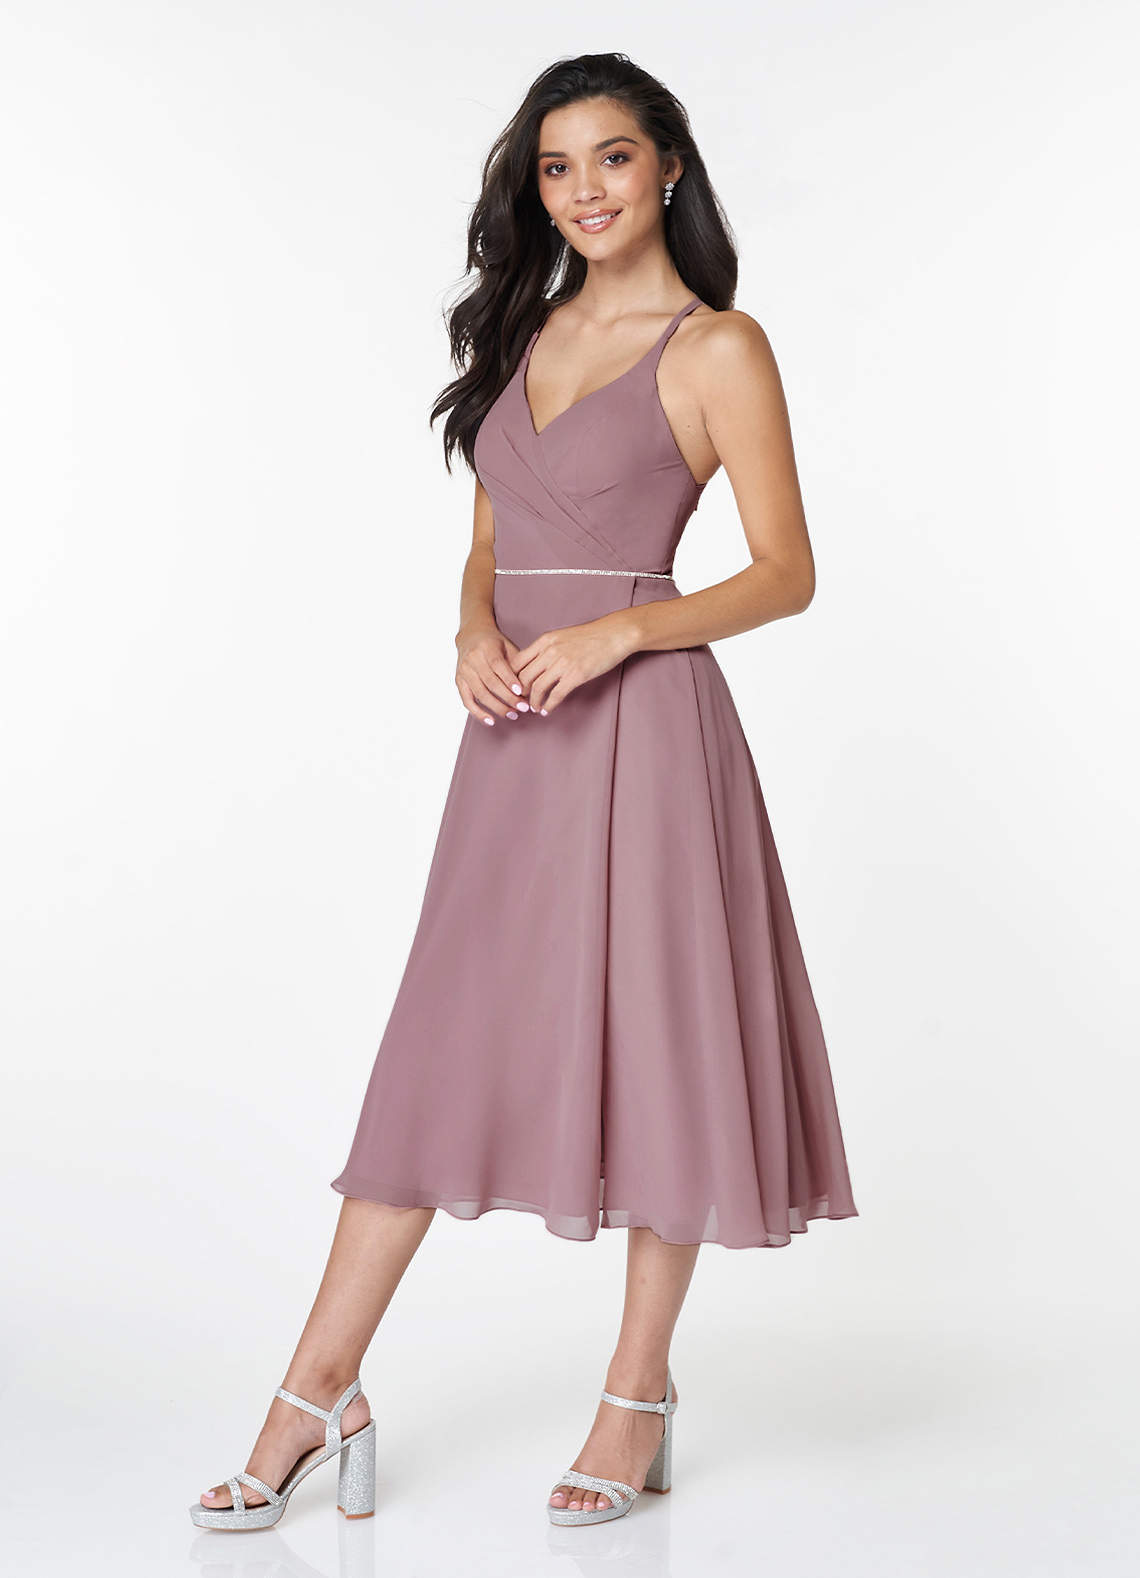 Arcadia Rouge Pink Sleeveless Midi Dress image1